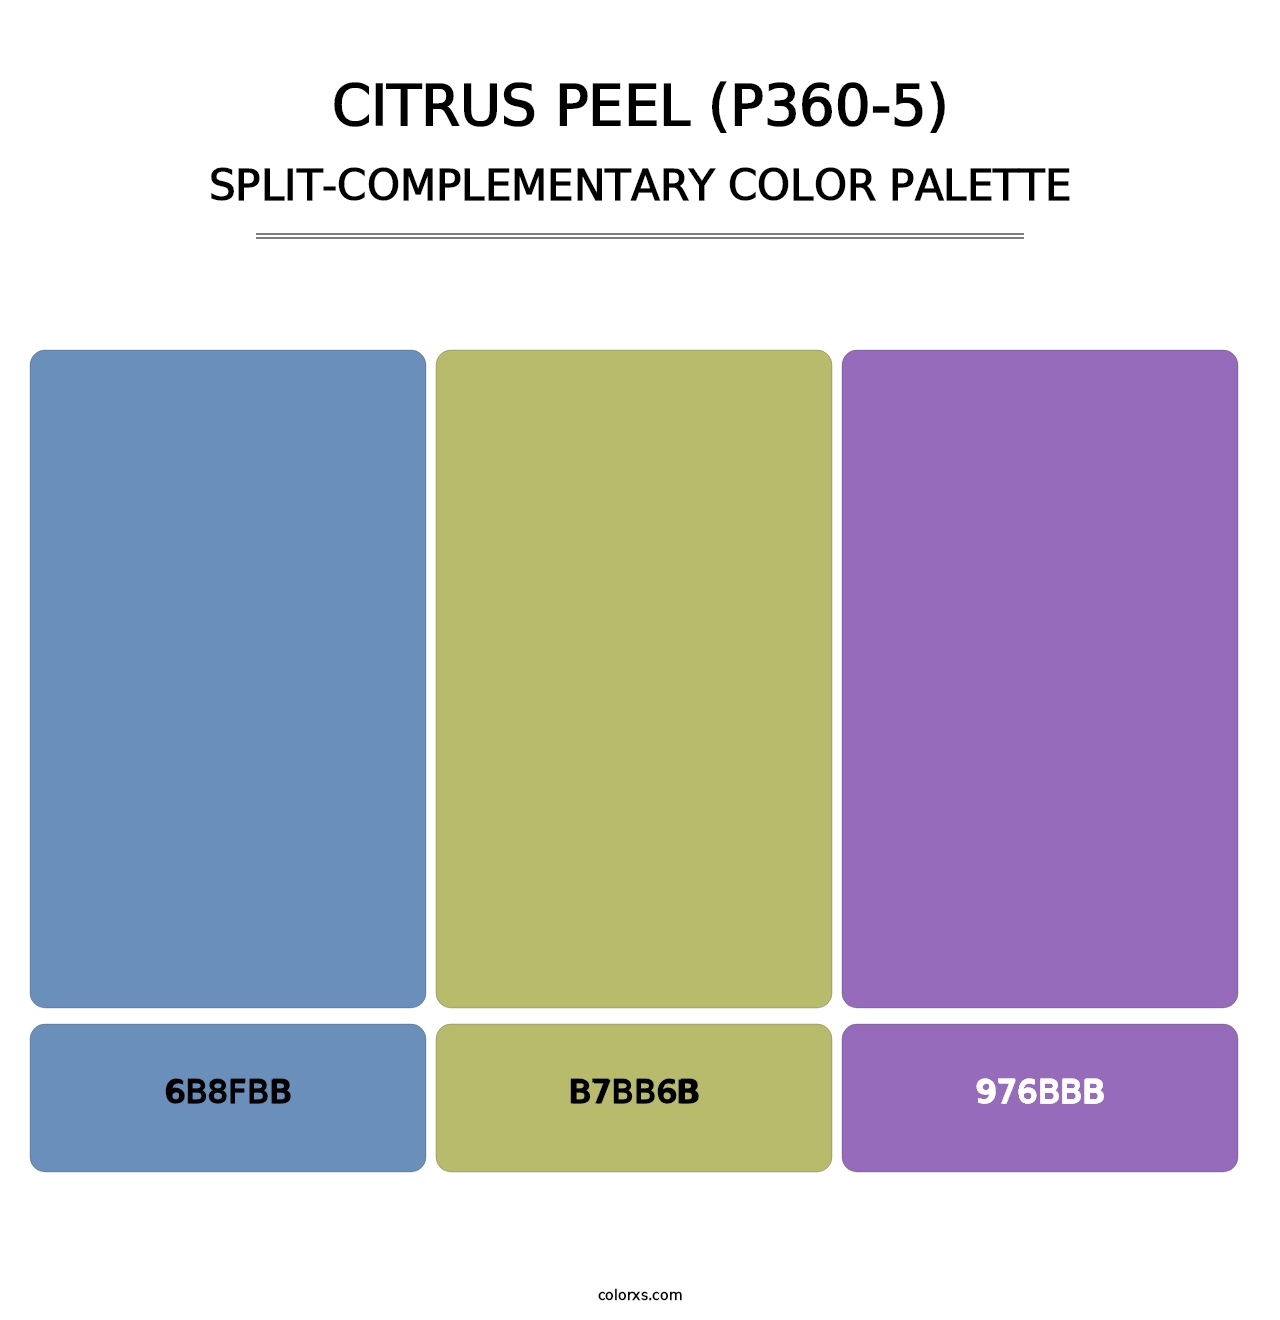 Citrus Peel (P360-5) - Split-Complementary Color Palette